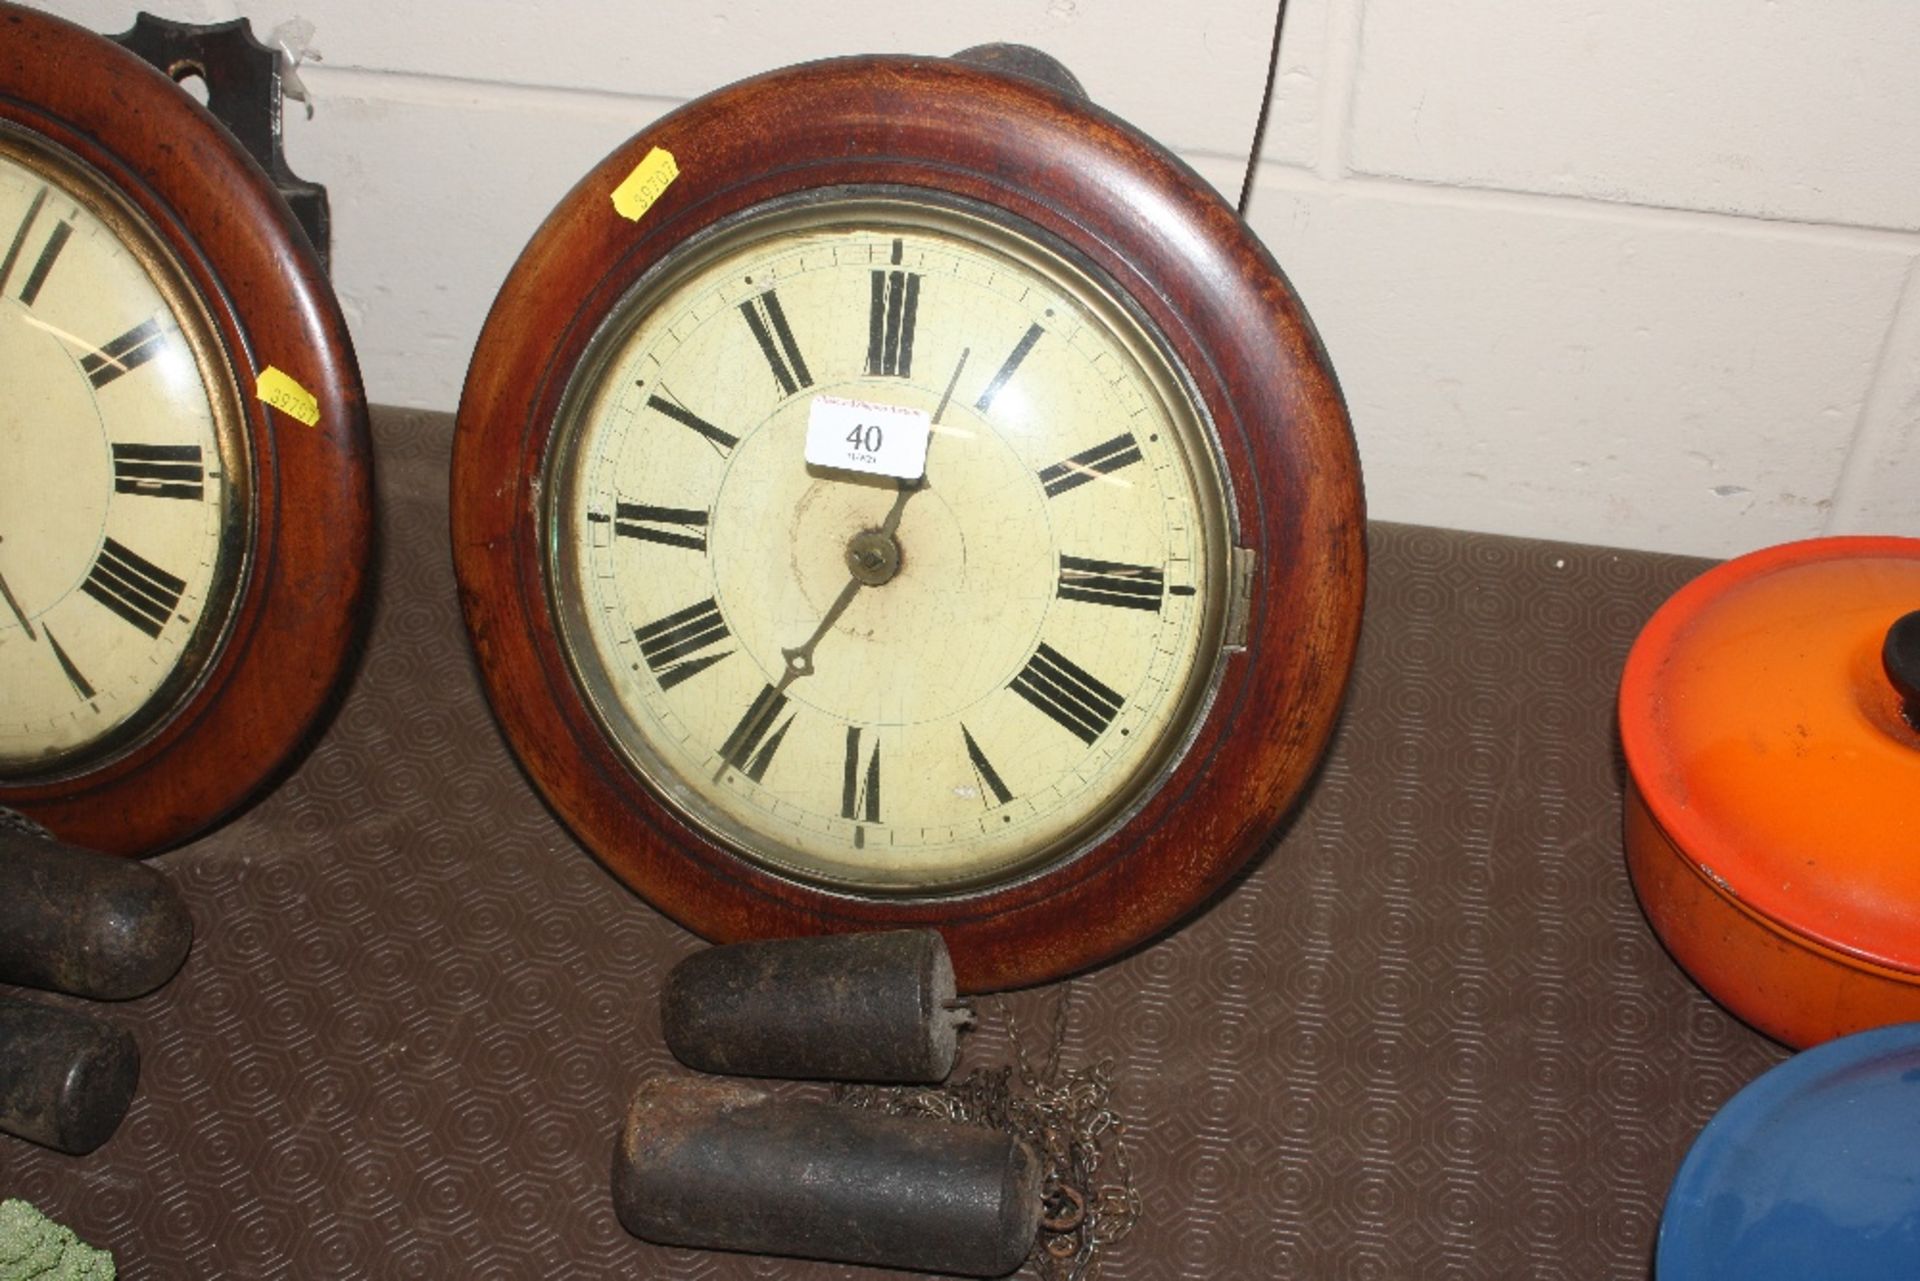 A Victorian postman's alarm clock